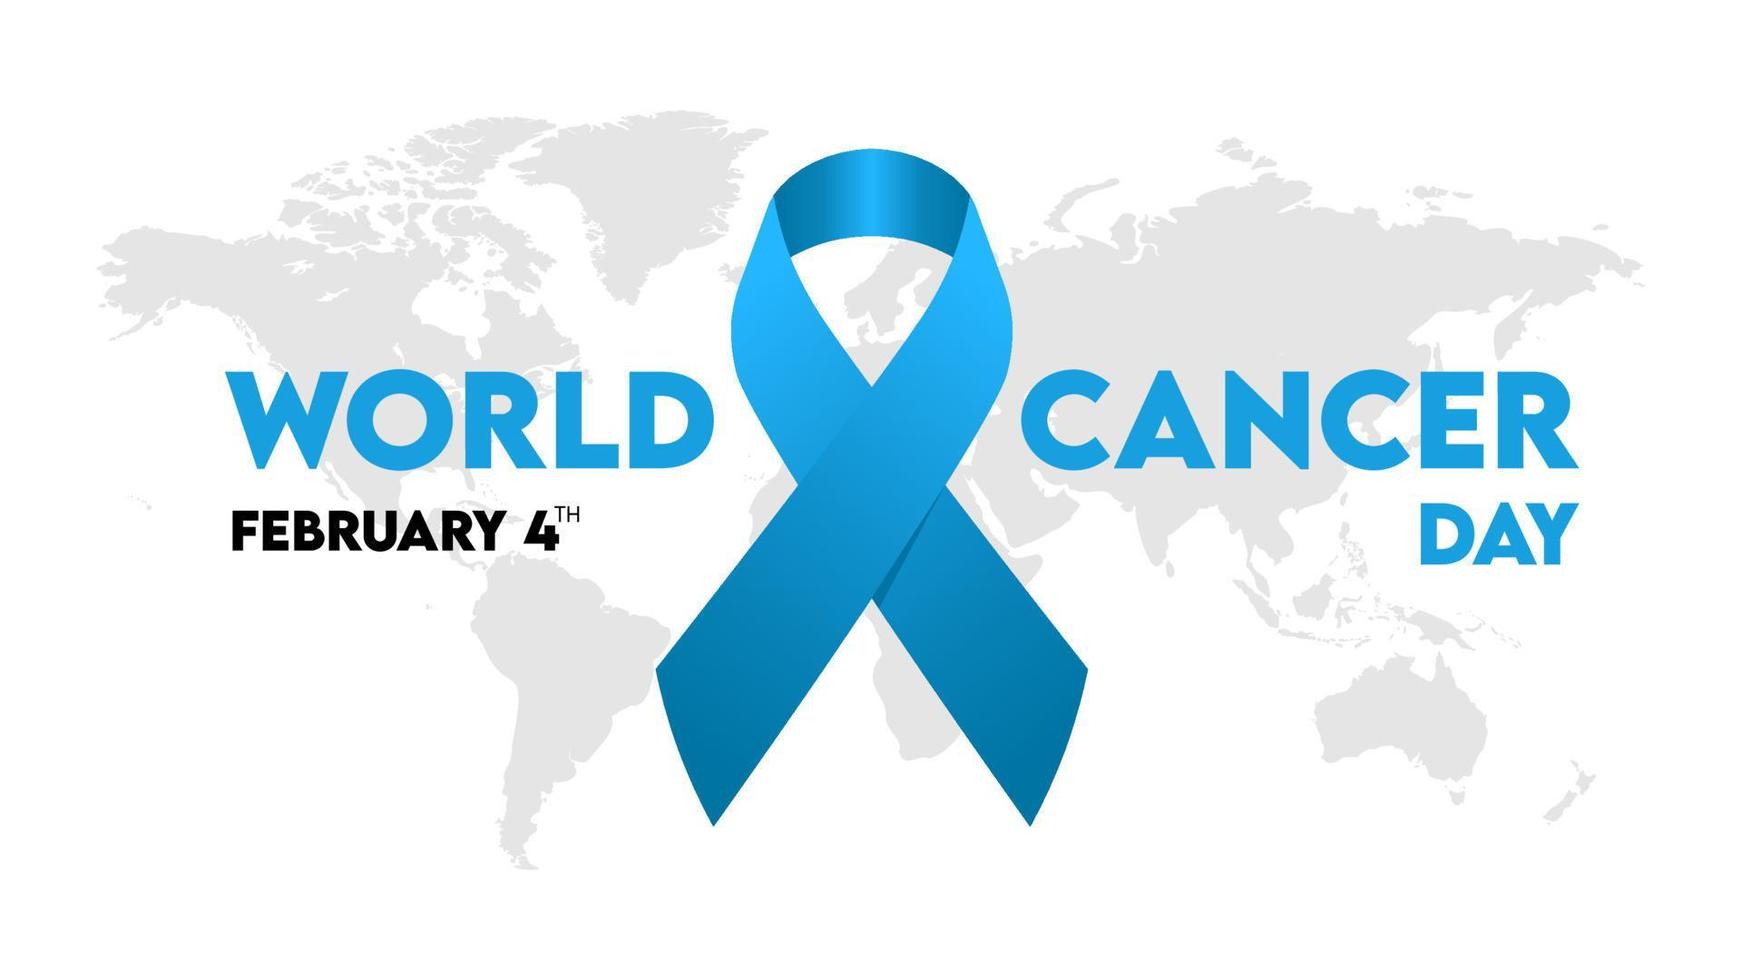 4 de febrero, día mundial del cáncer, texto con símbolo de cinta y mapa mundial. ilustración vectorial de esperanza. vector